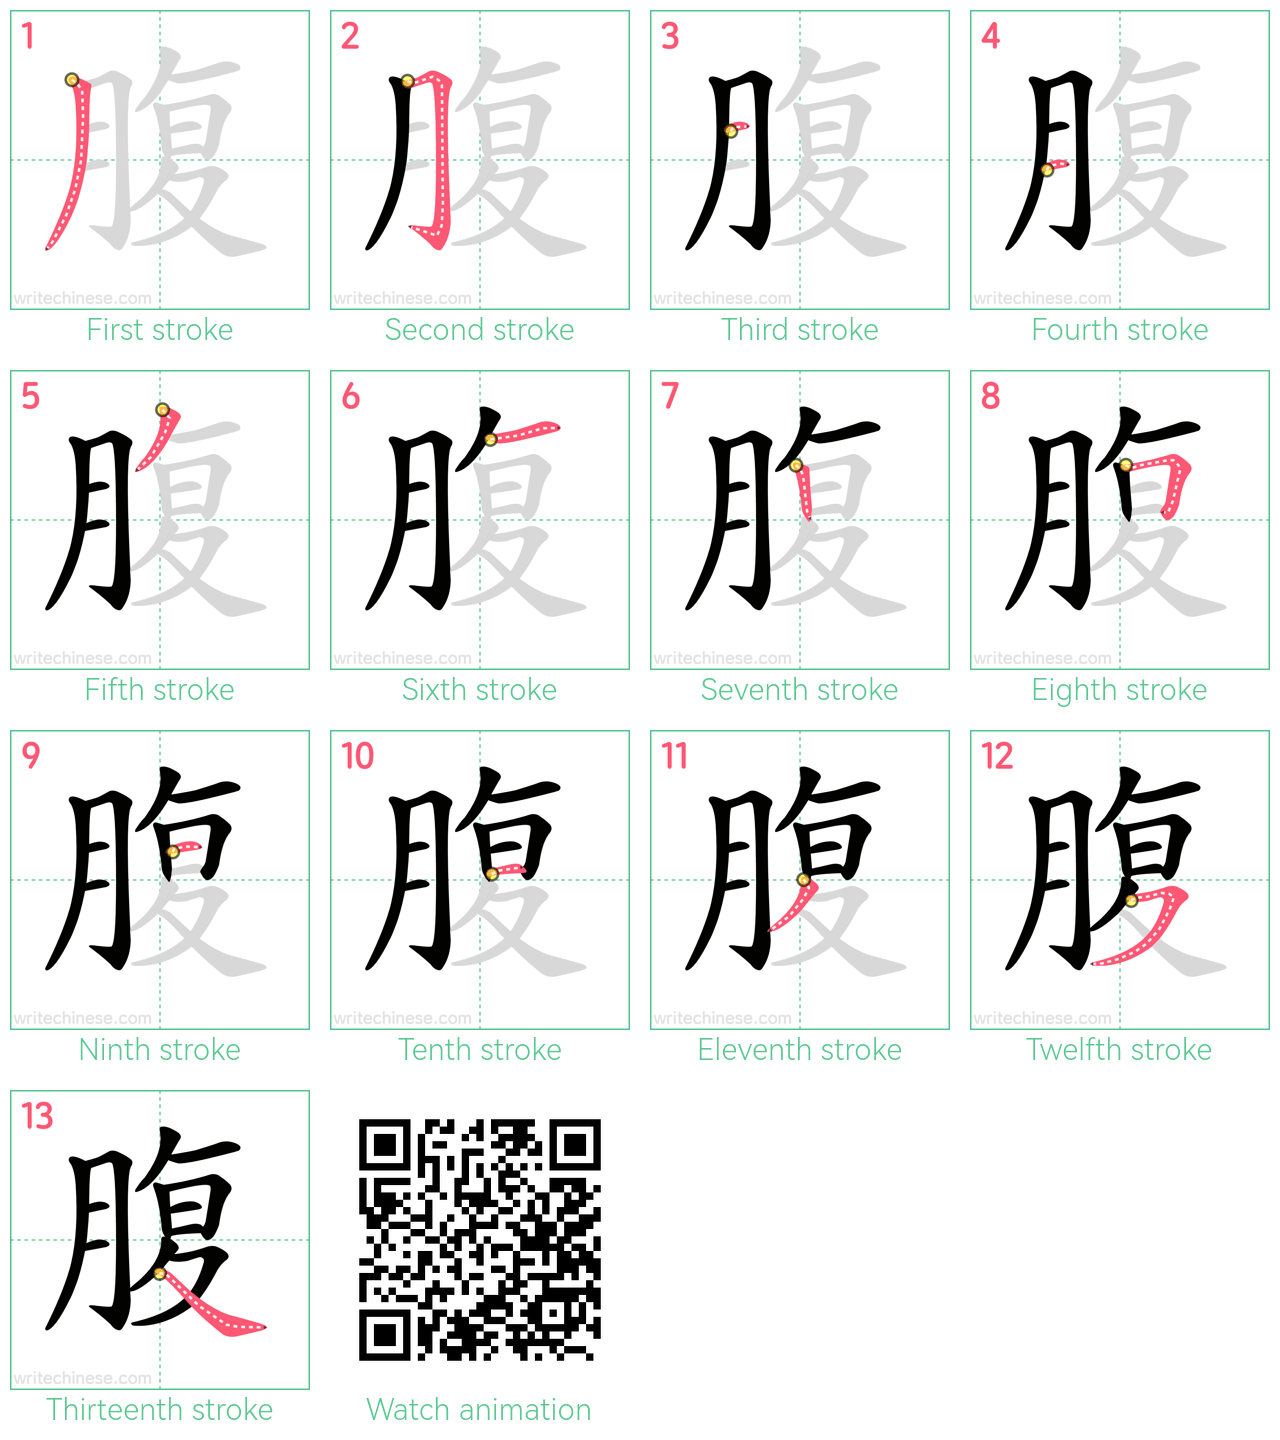 腹 step-by-step stroke order diagrams